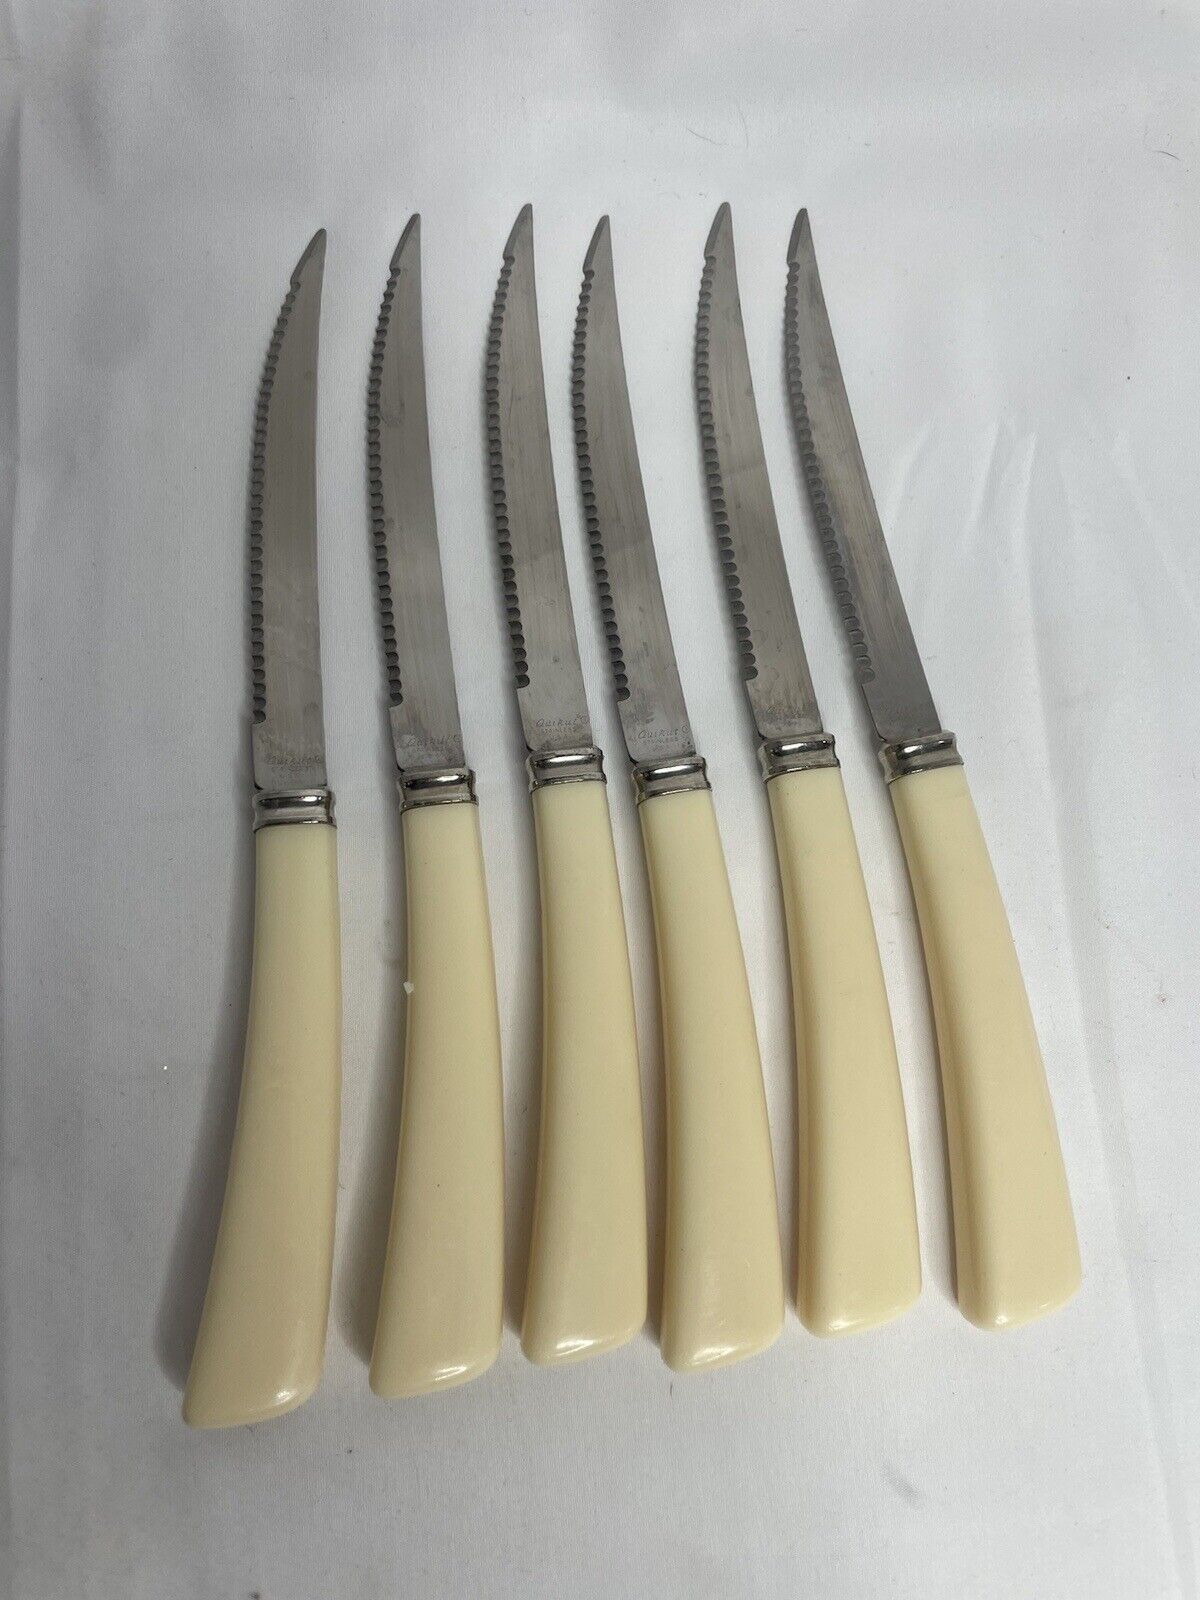 Vintage Quickut Set of 6 Stainless Steel Steak Knives w/ Ivory Bakelite Handles